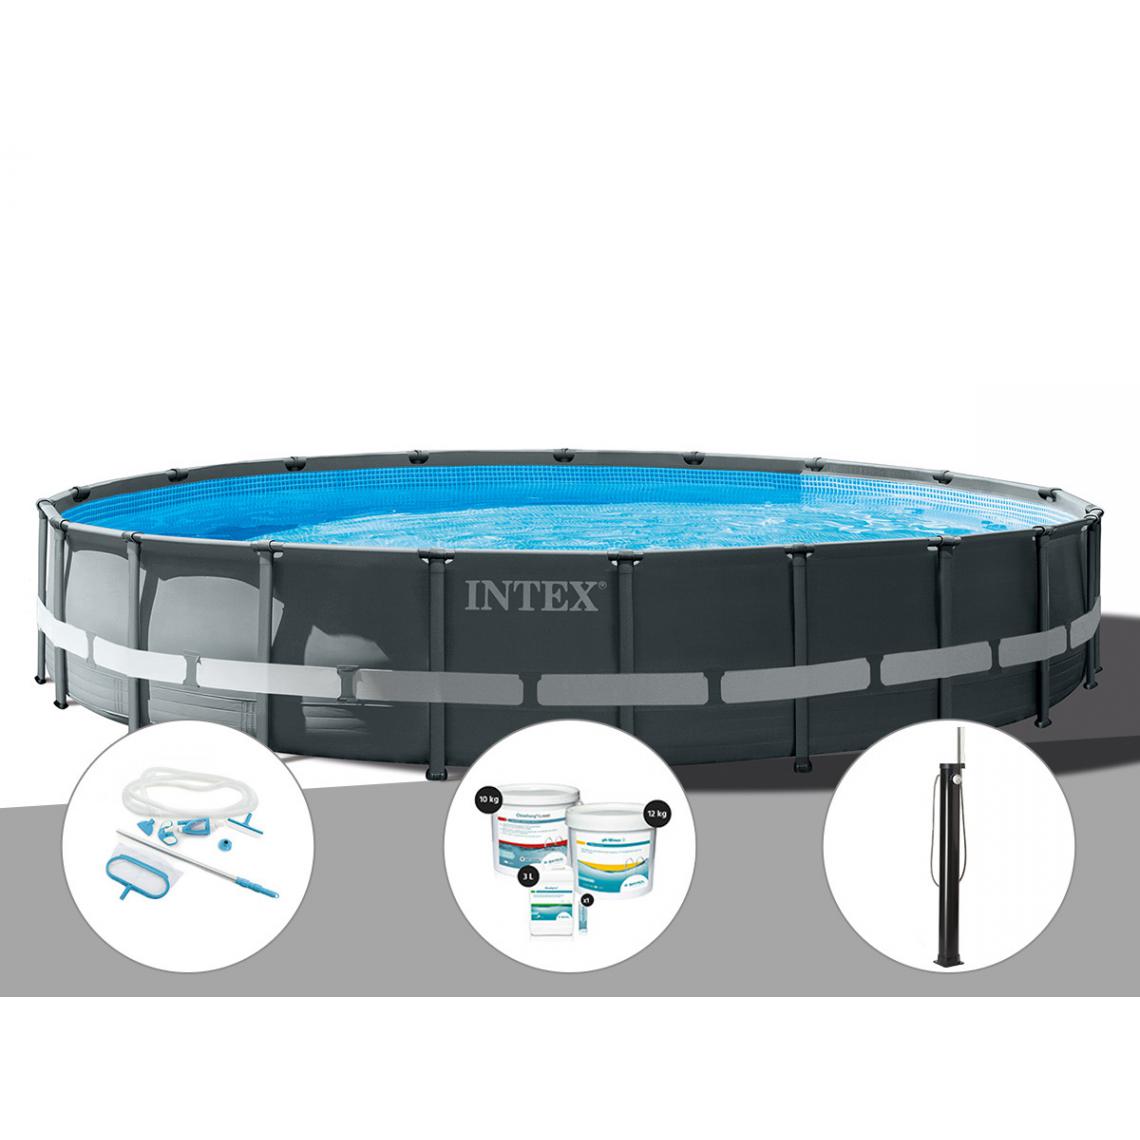 Intex - Kit piscine tubulaire Intex Ultra XTR Frame ronde 6,10 x 1,22 m + Kit d'entretien + Kit de traitement au chlore + Douche solaire - Piscine Tubulaire